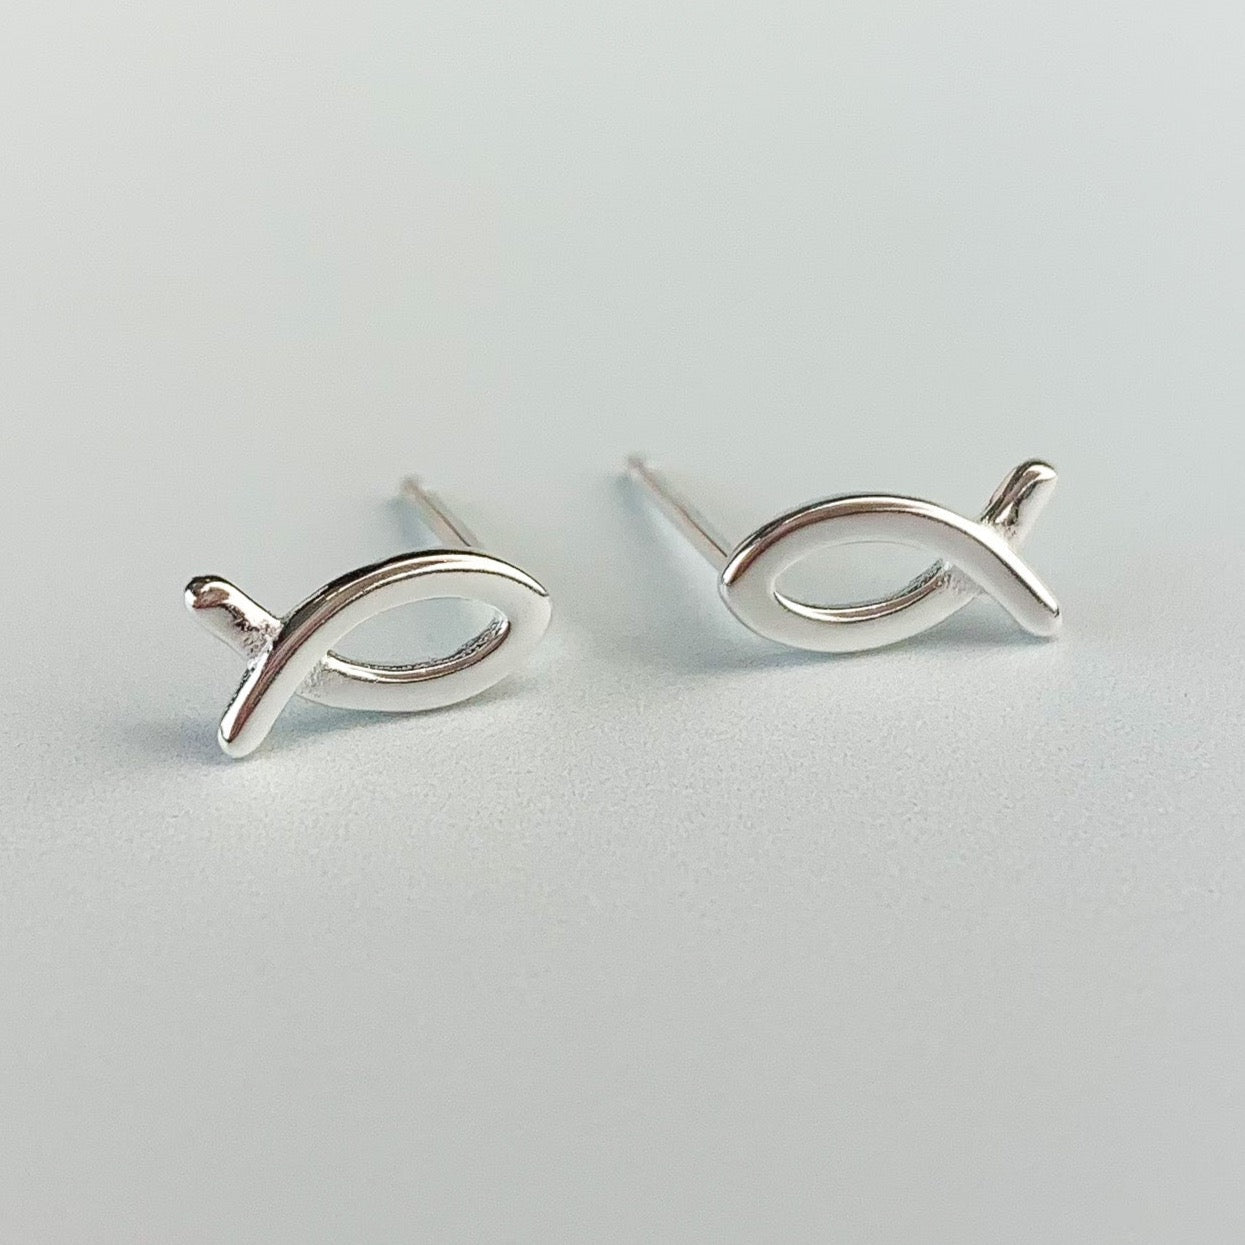 Minimalist Fish Stud Earrings